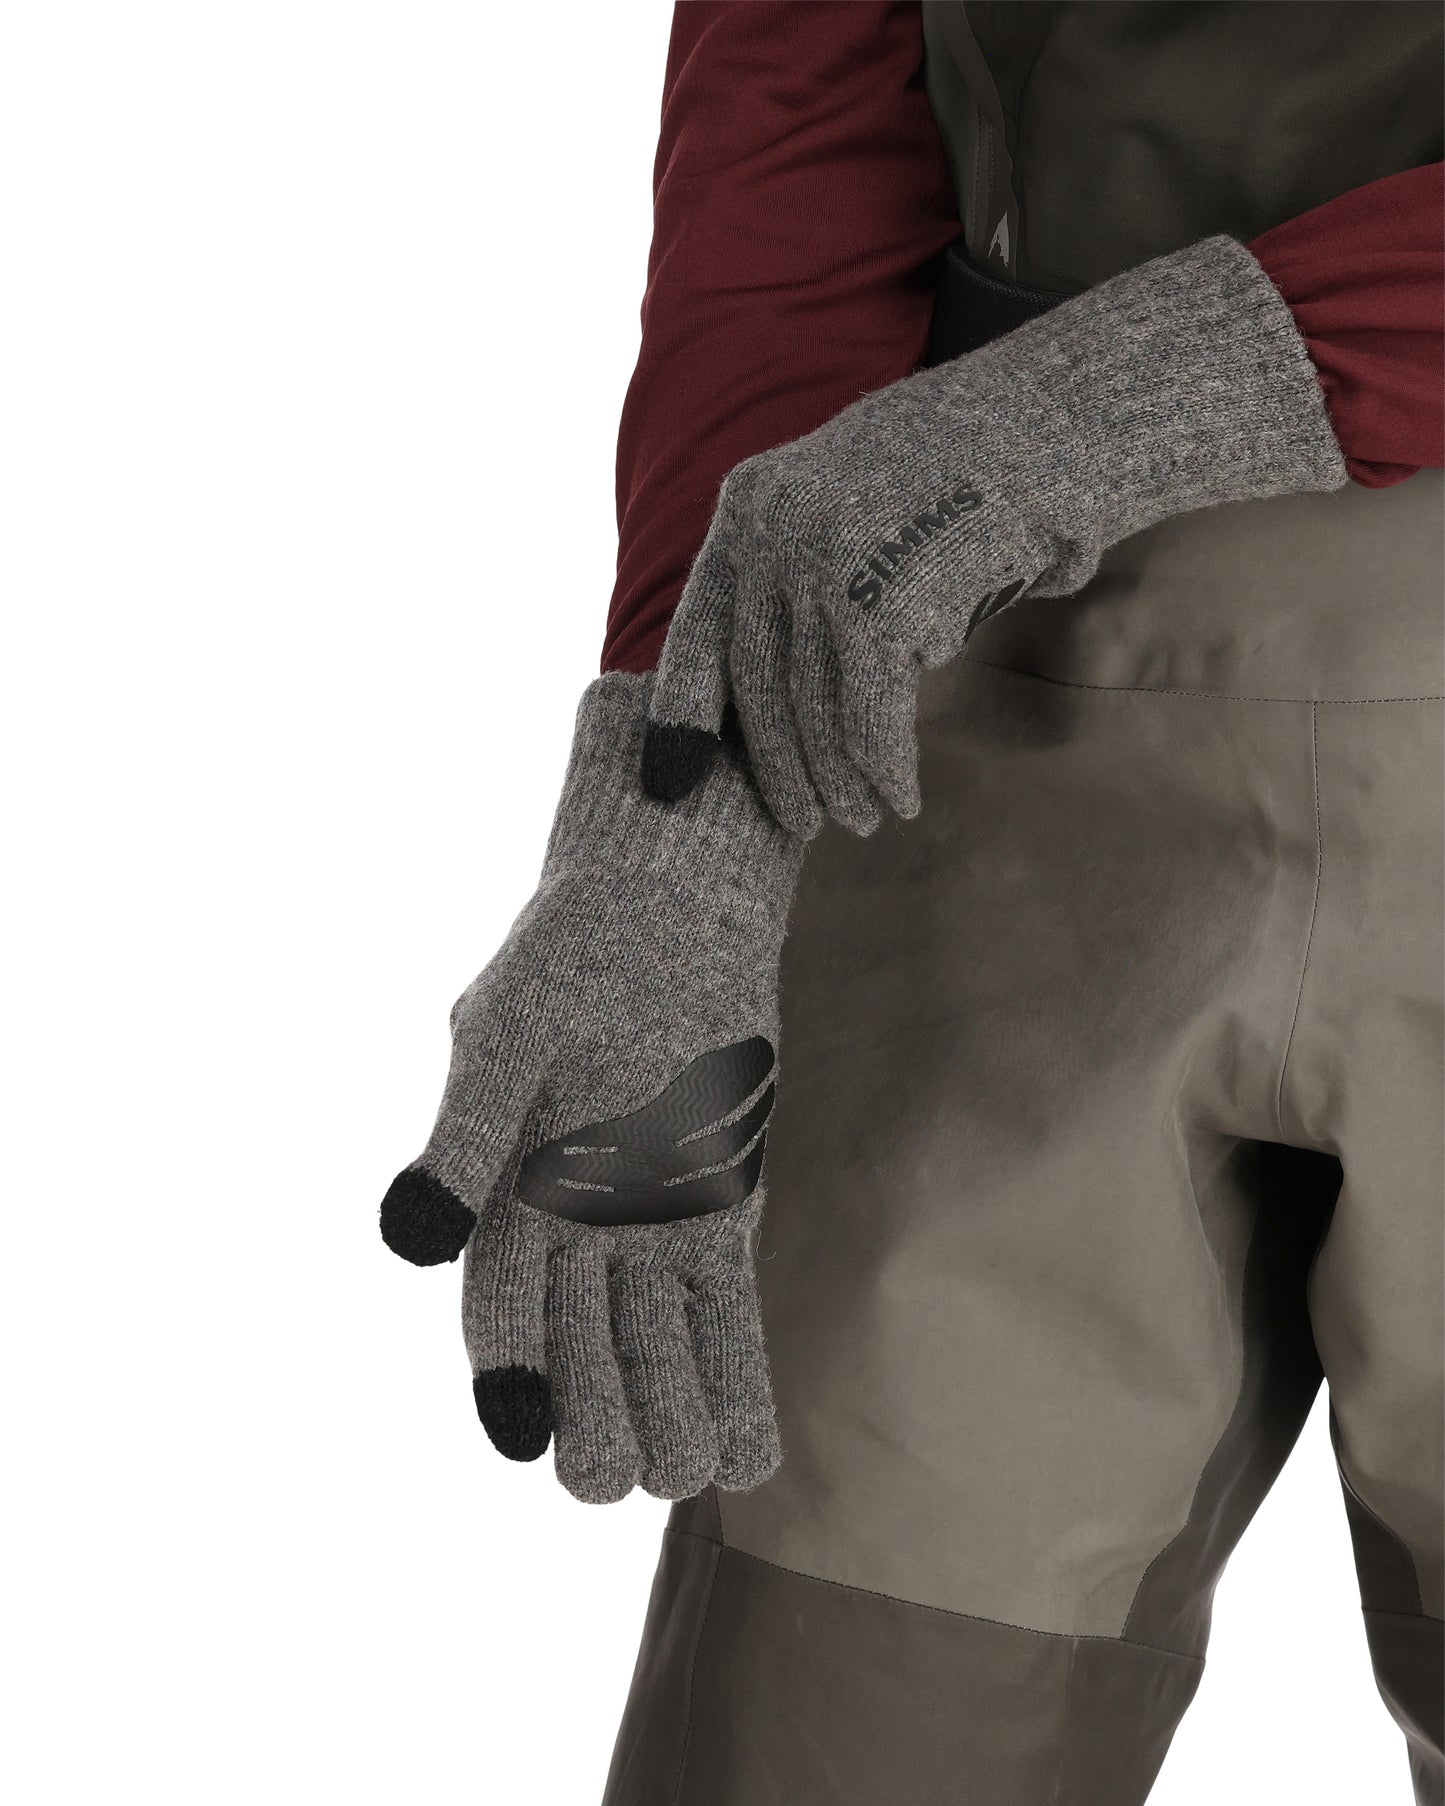 Simms Wool Full Finger Glove - Steel - S/M